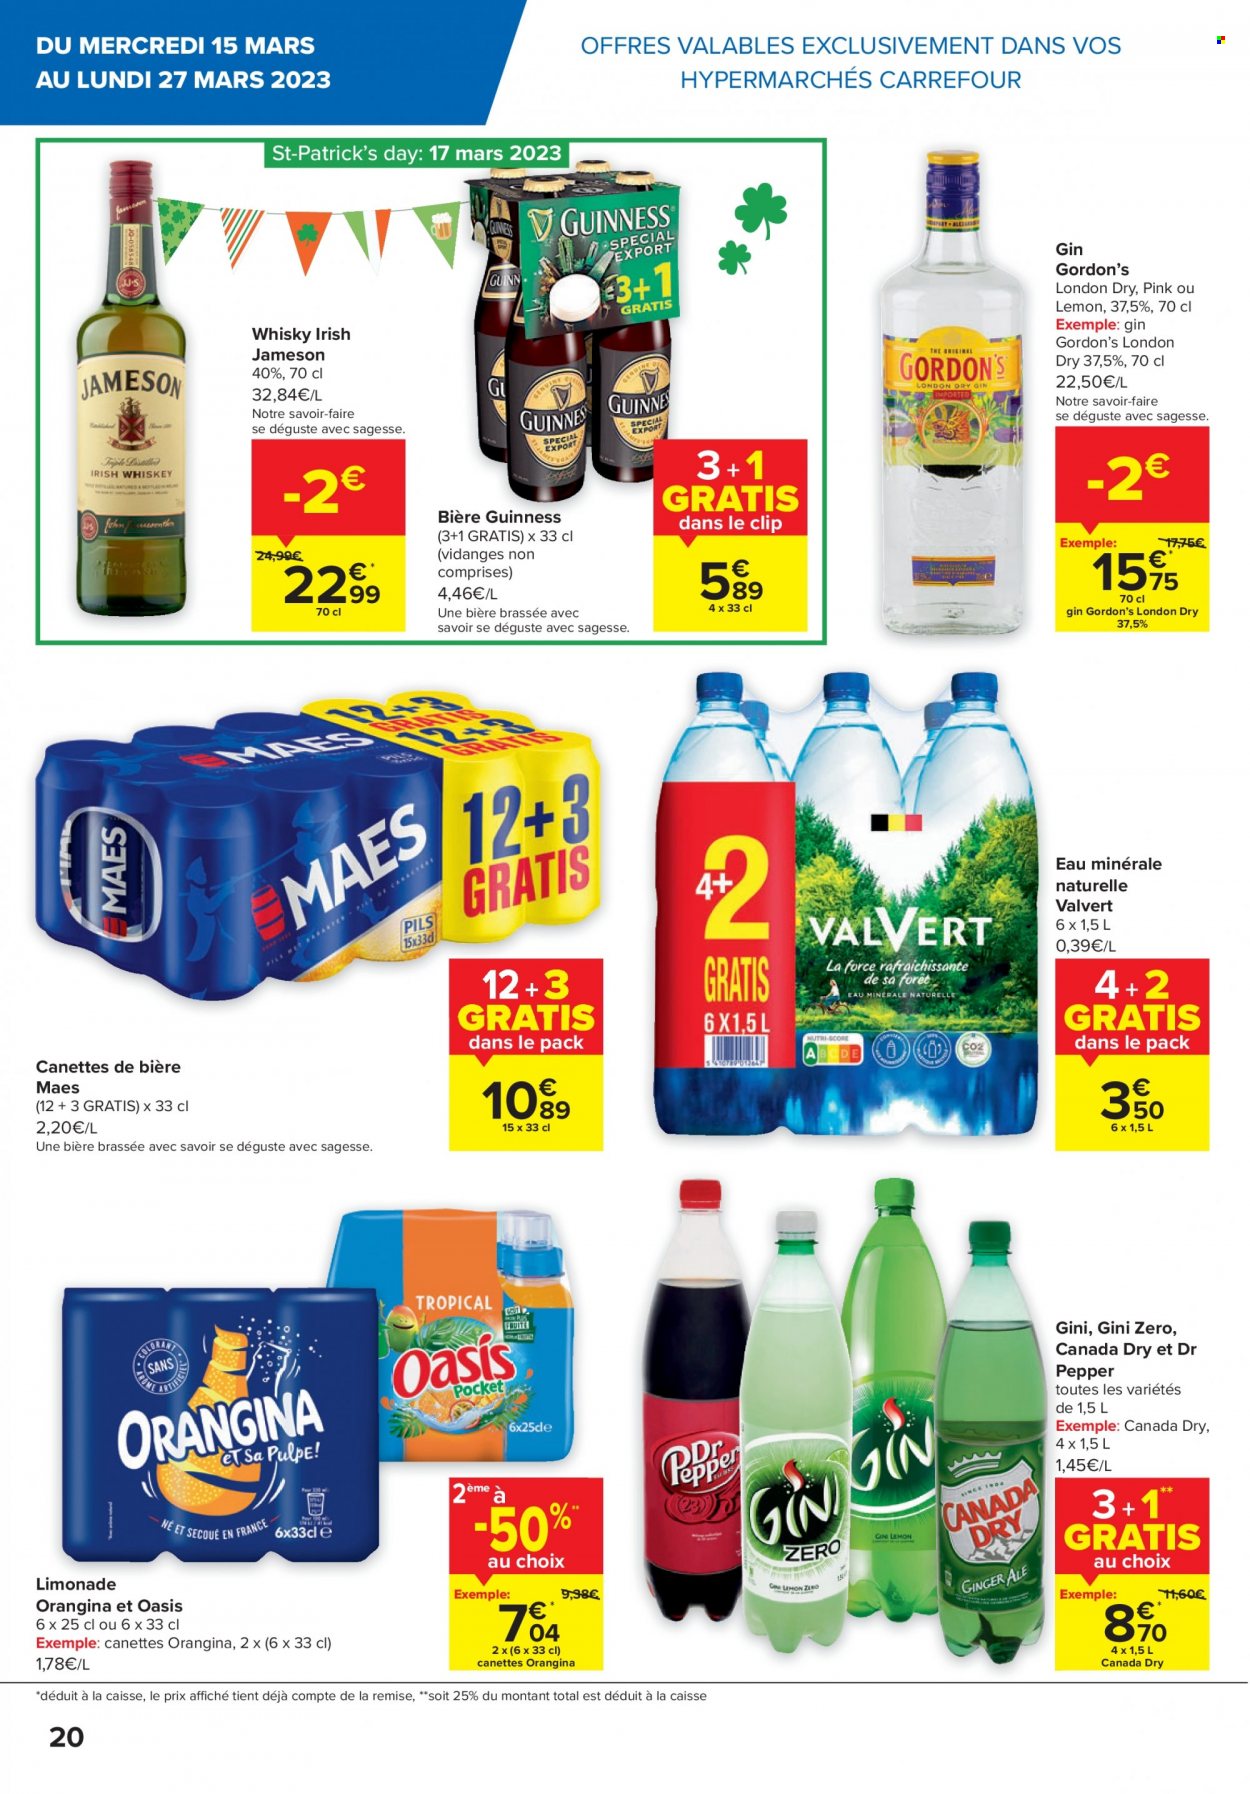 thumbnail - Catalogue Carrefour - 15/03/2023 - 27/03/2023 - Produits soldés - Oasis, Orangina, limonade, eau minérale, eau minérale naturelle, gin, Jameson, whisky. Page 20.